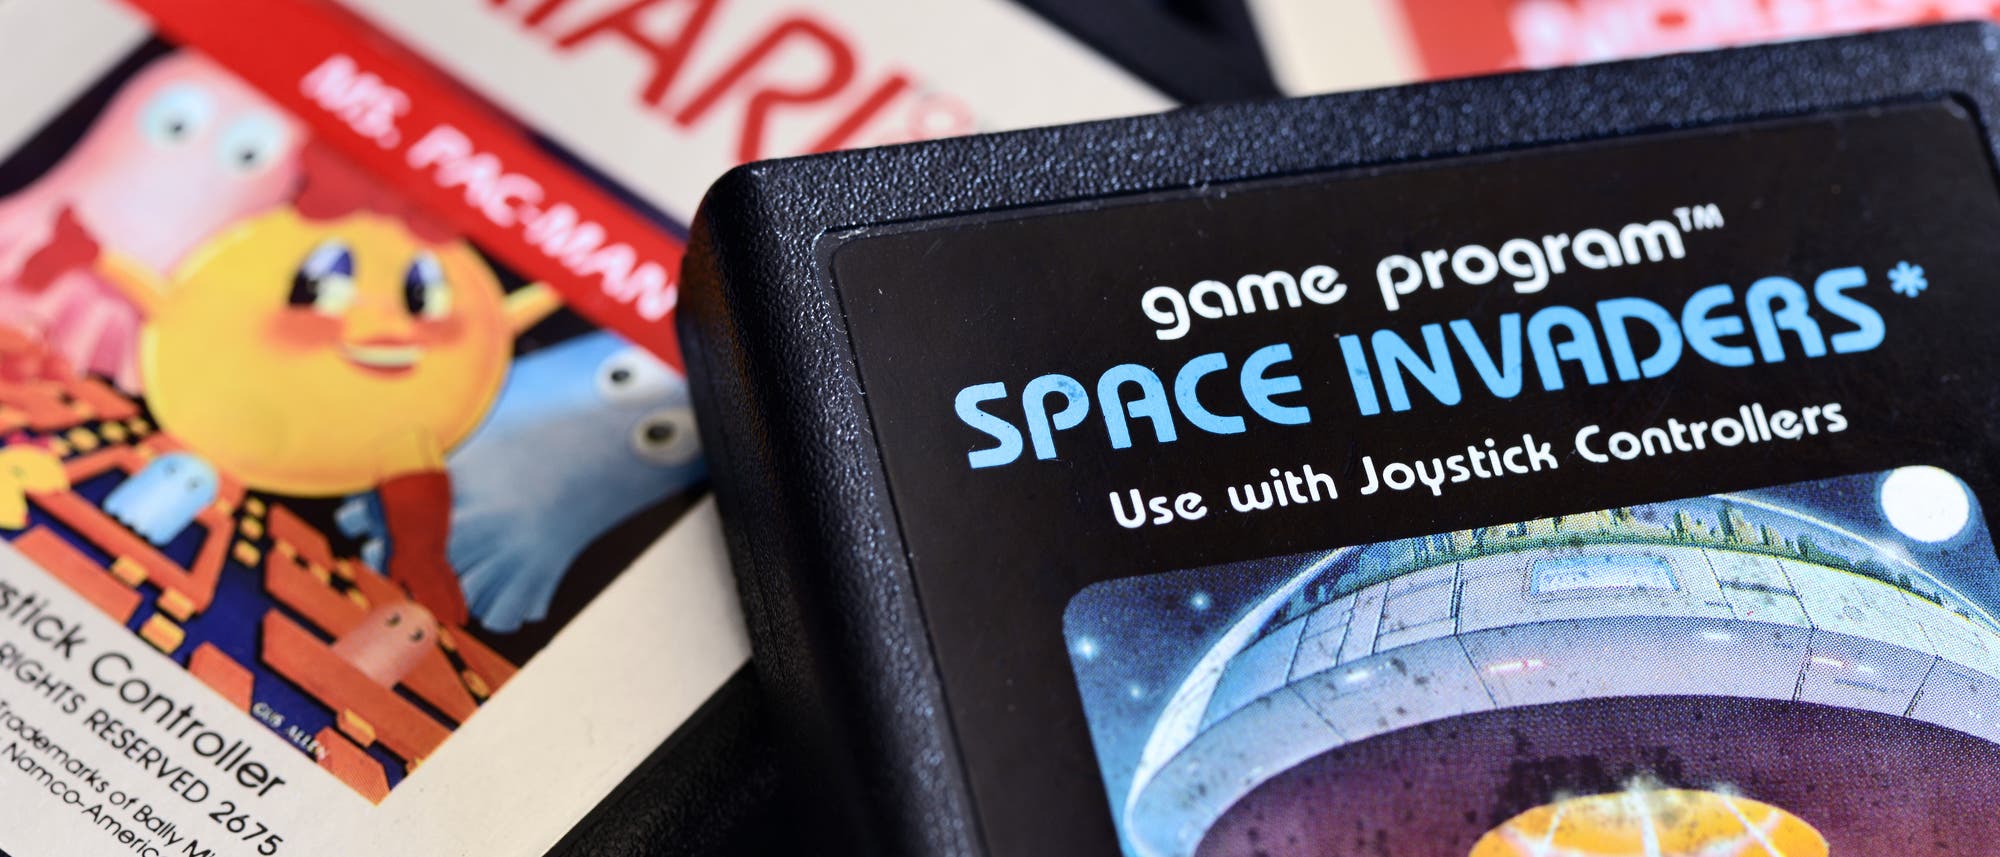 Atari-Spiele, darunter das legendäre »Space Invaders« 